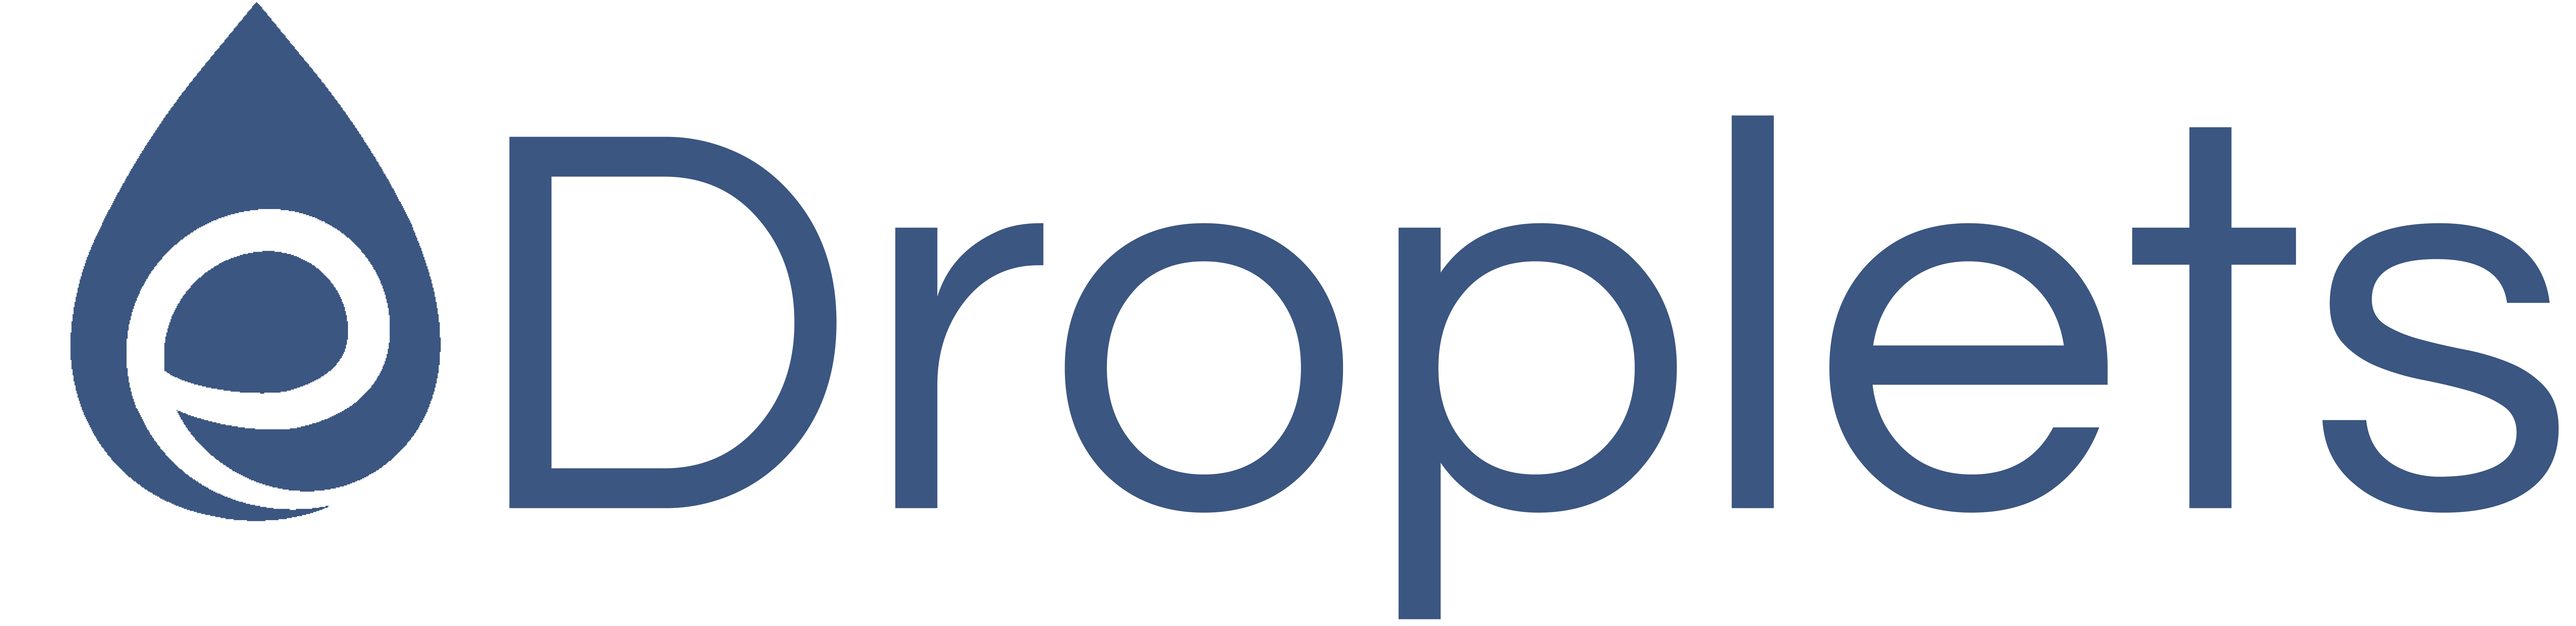 eDroplets_logo.png